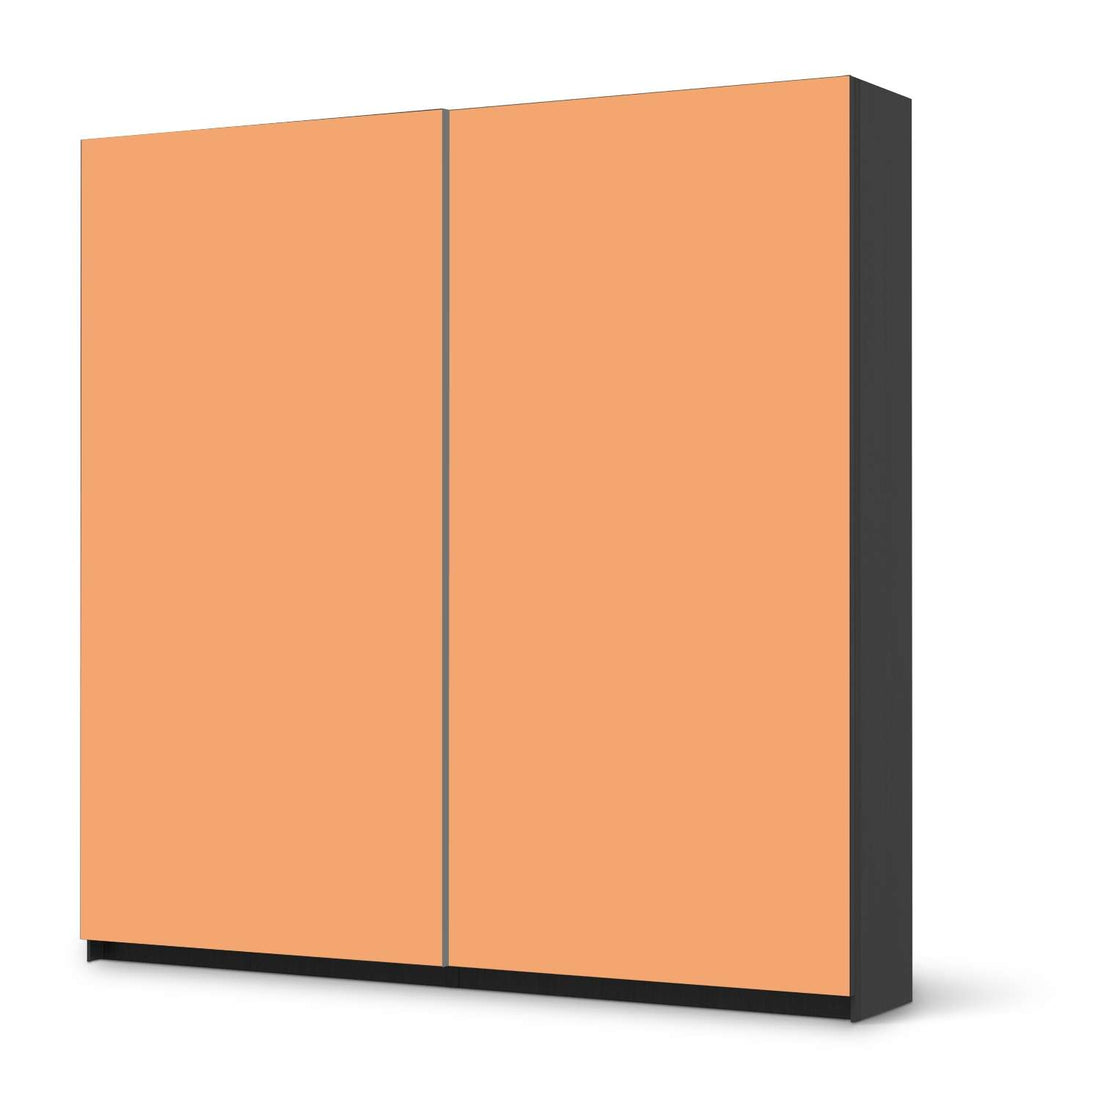 Möbel Klebefolie Orange Light - IKEA Pax Schrank 201 cm Höhe - Schiebetür - schwarz